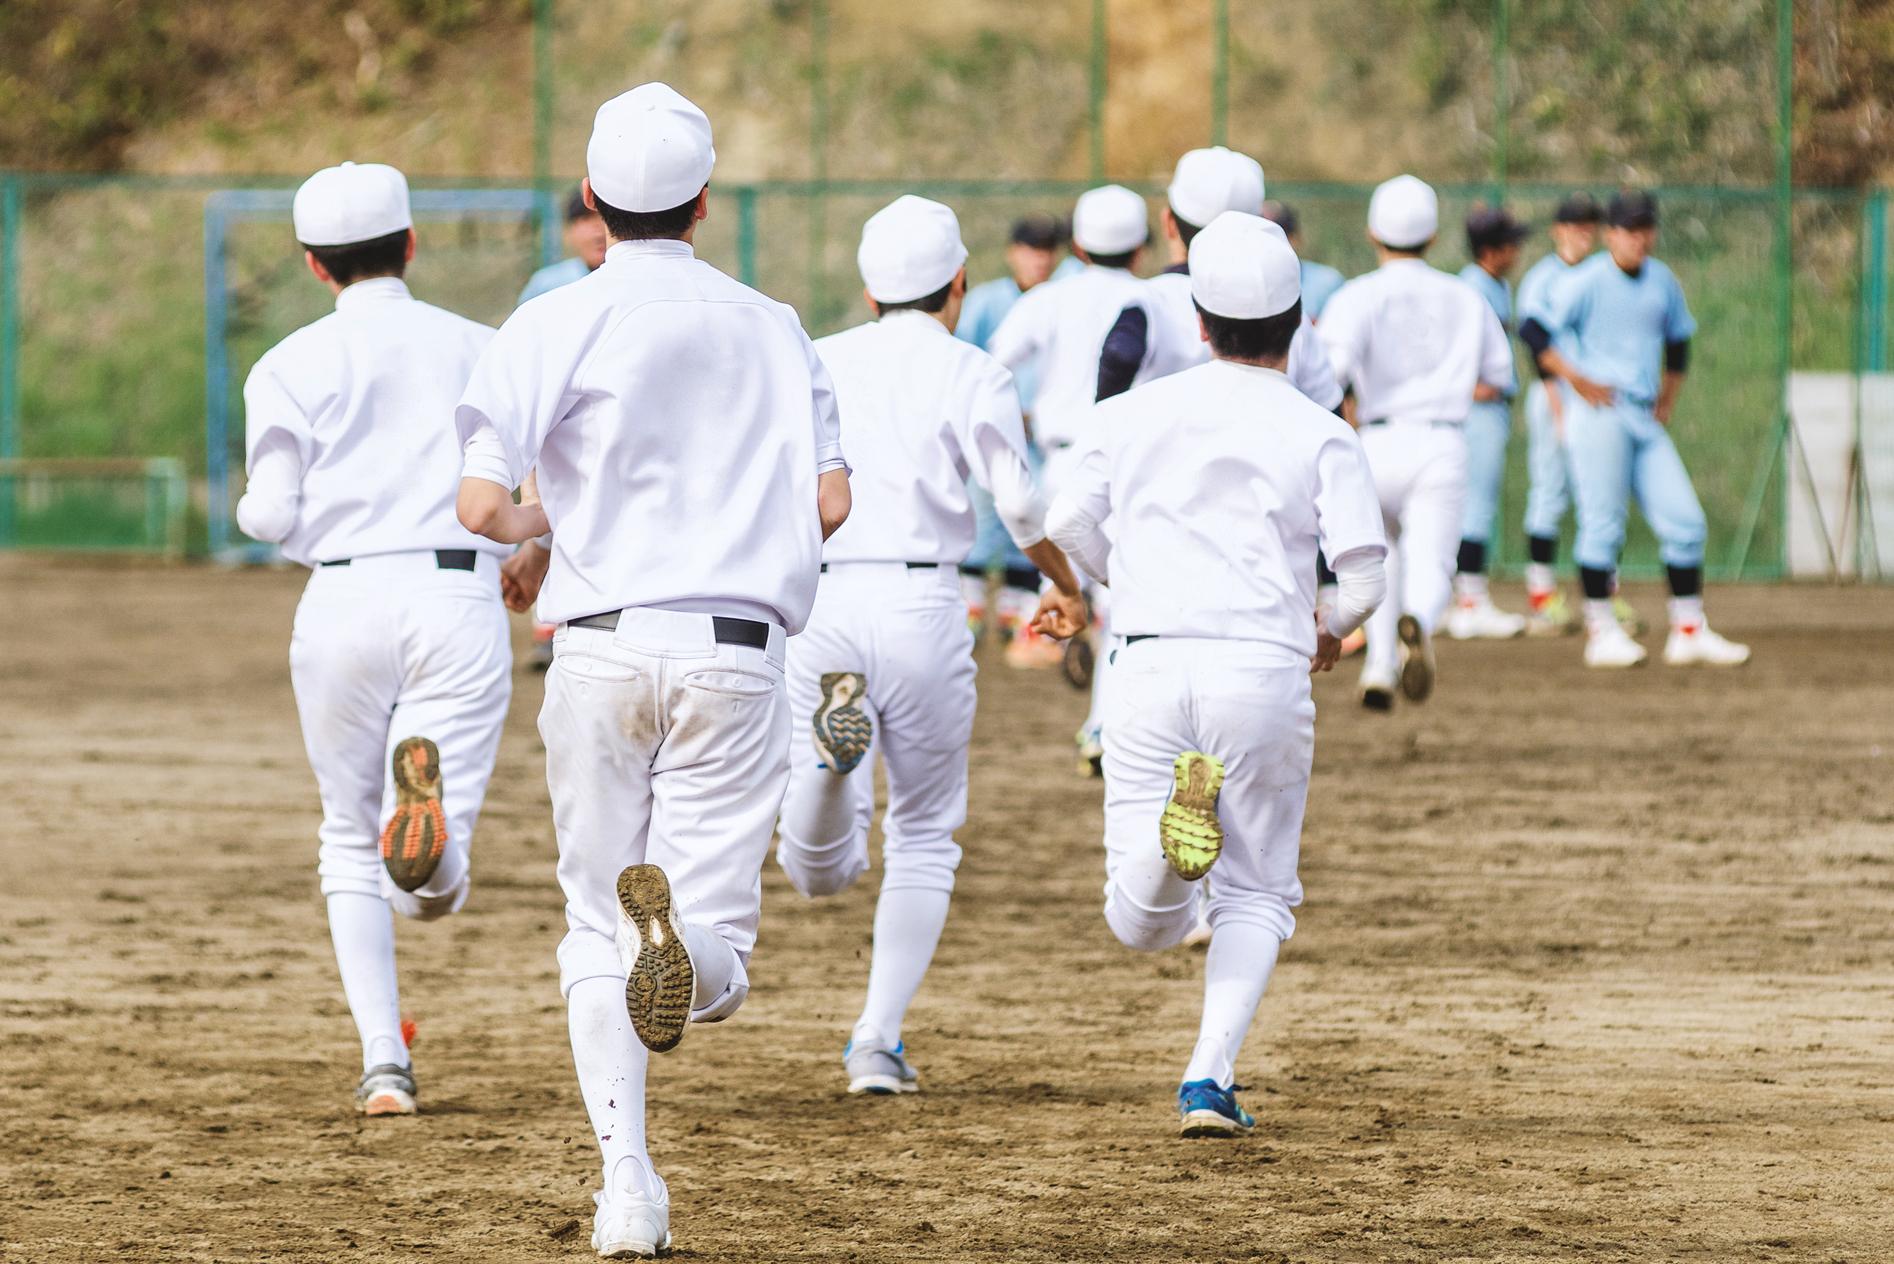 日本の子どもや若者はスポーツや身体活動にどのように参加しているのでしょうか?